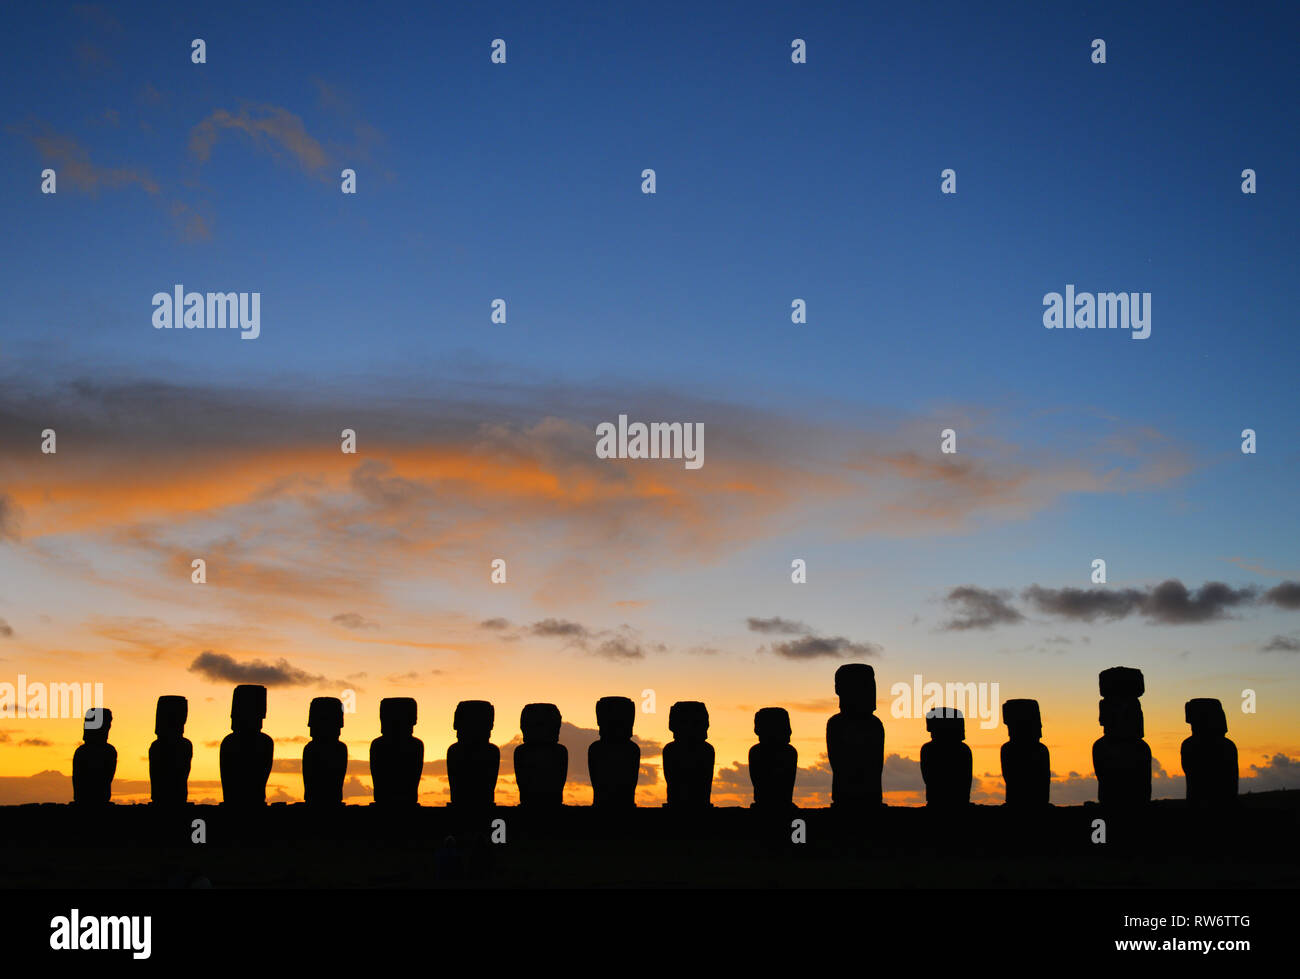 La silhouette di quindici statue Moai di Ahu Tongariki all alba di Rapa Nui Island (l'Isola di Pasqua) nel mezzo dell'Oceano Pacifico, Cile. Foto Stock